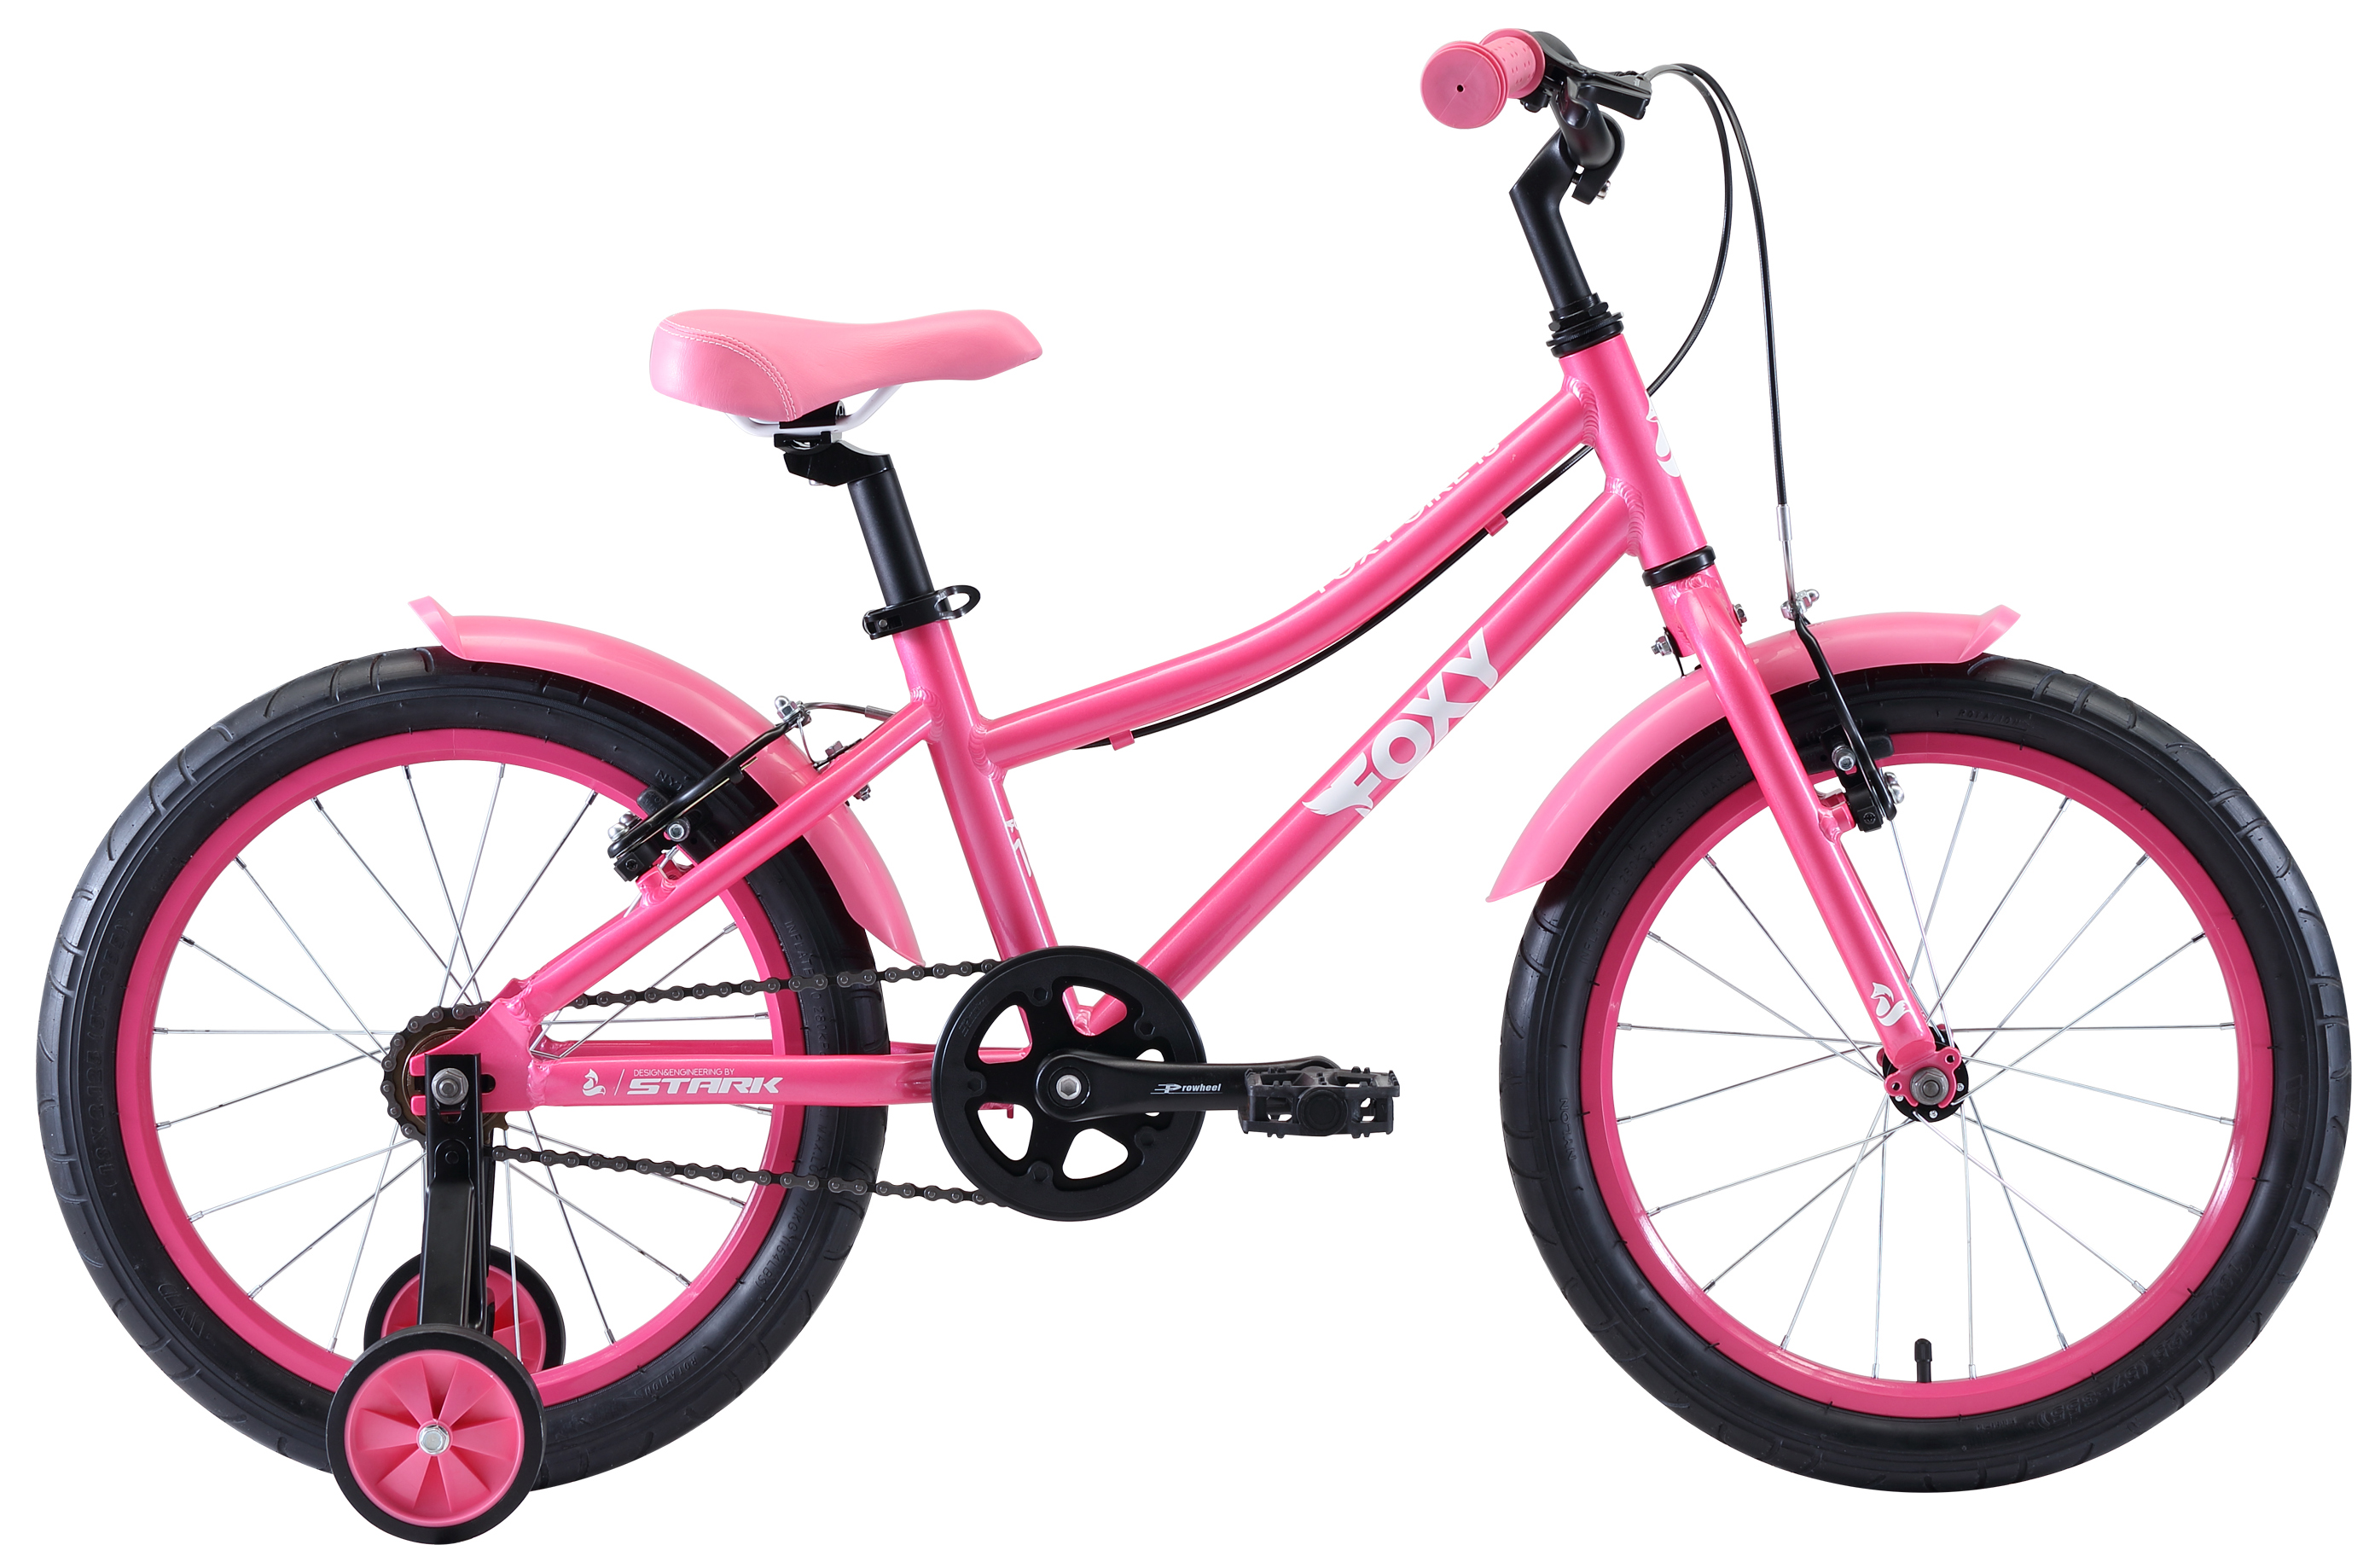  Отзывы о Детском велосипеде Stark Foxy 18 Girl 2020